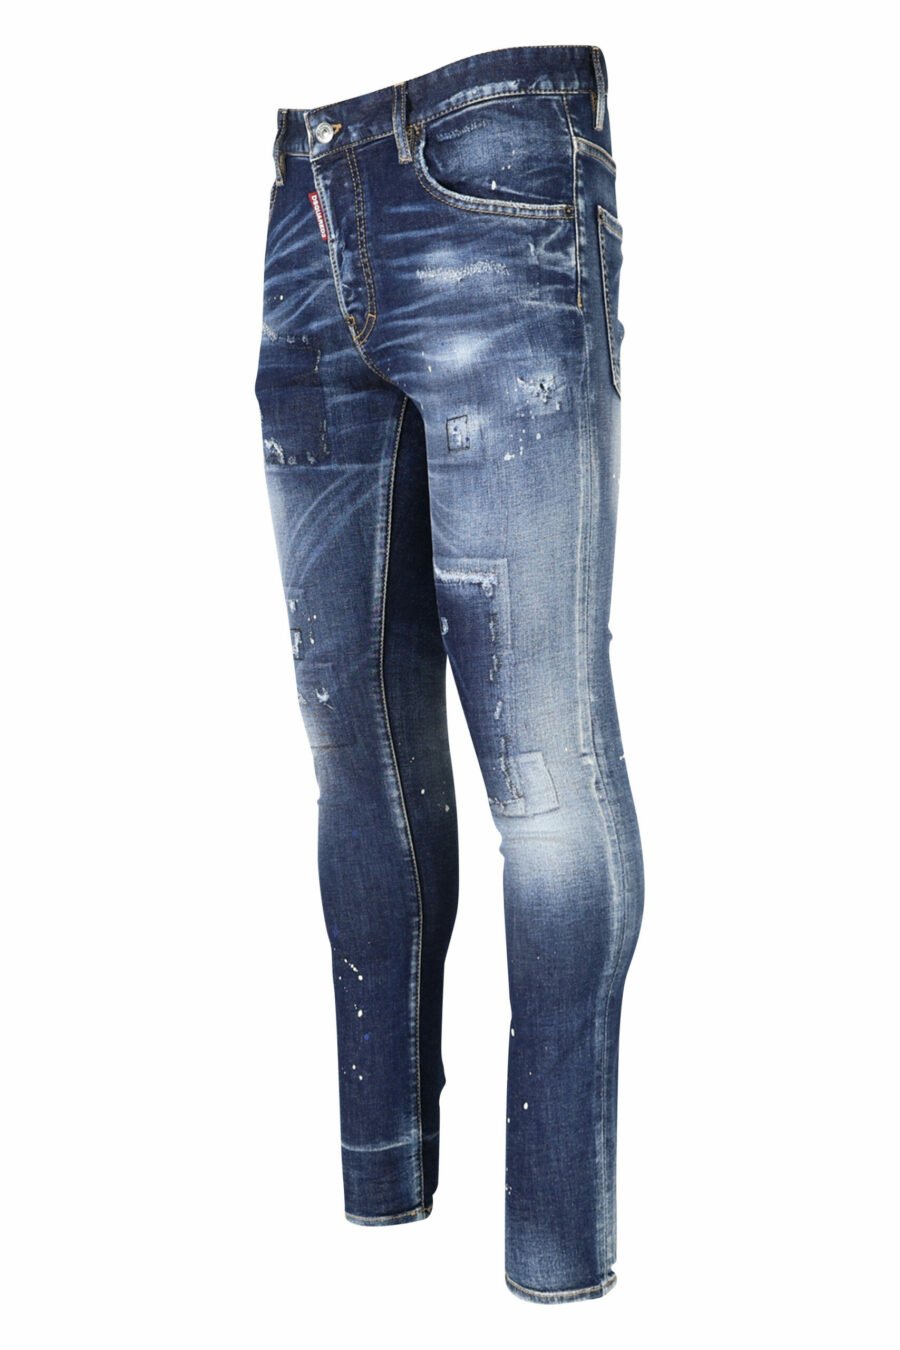 Jean bleu "super twinky jean" avec patch et effiloché - 8054148104863 1 échelle